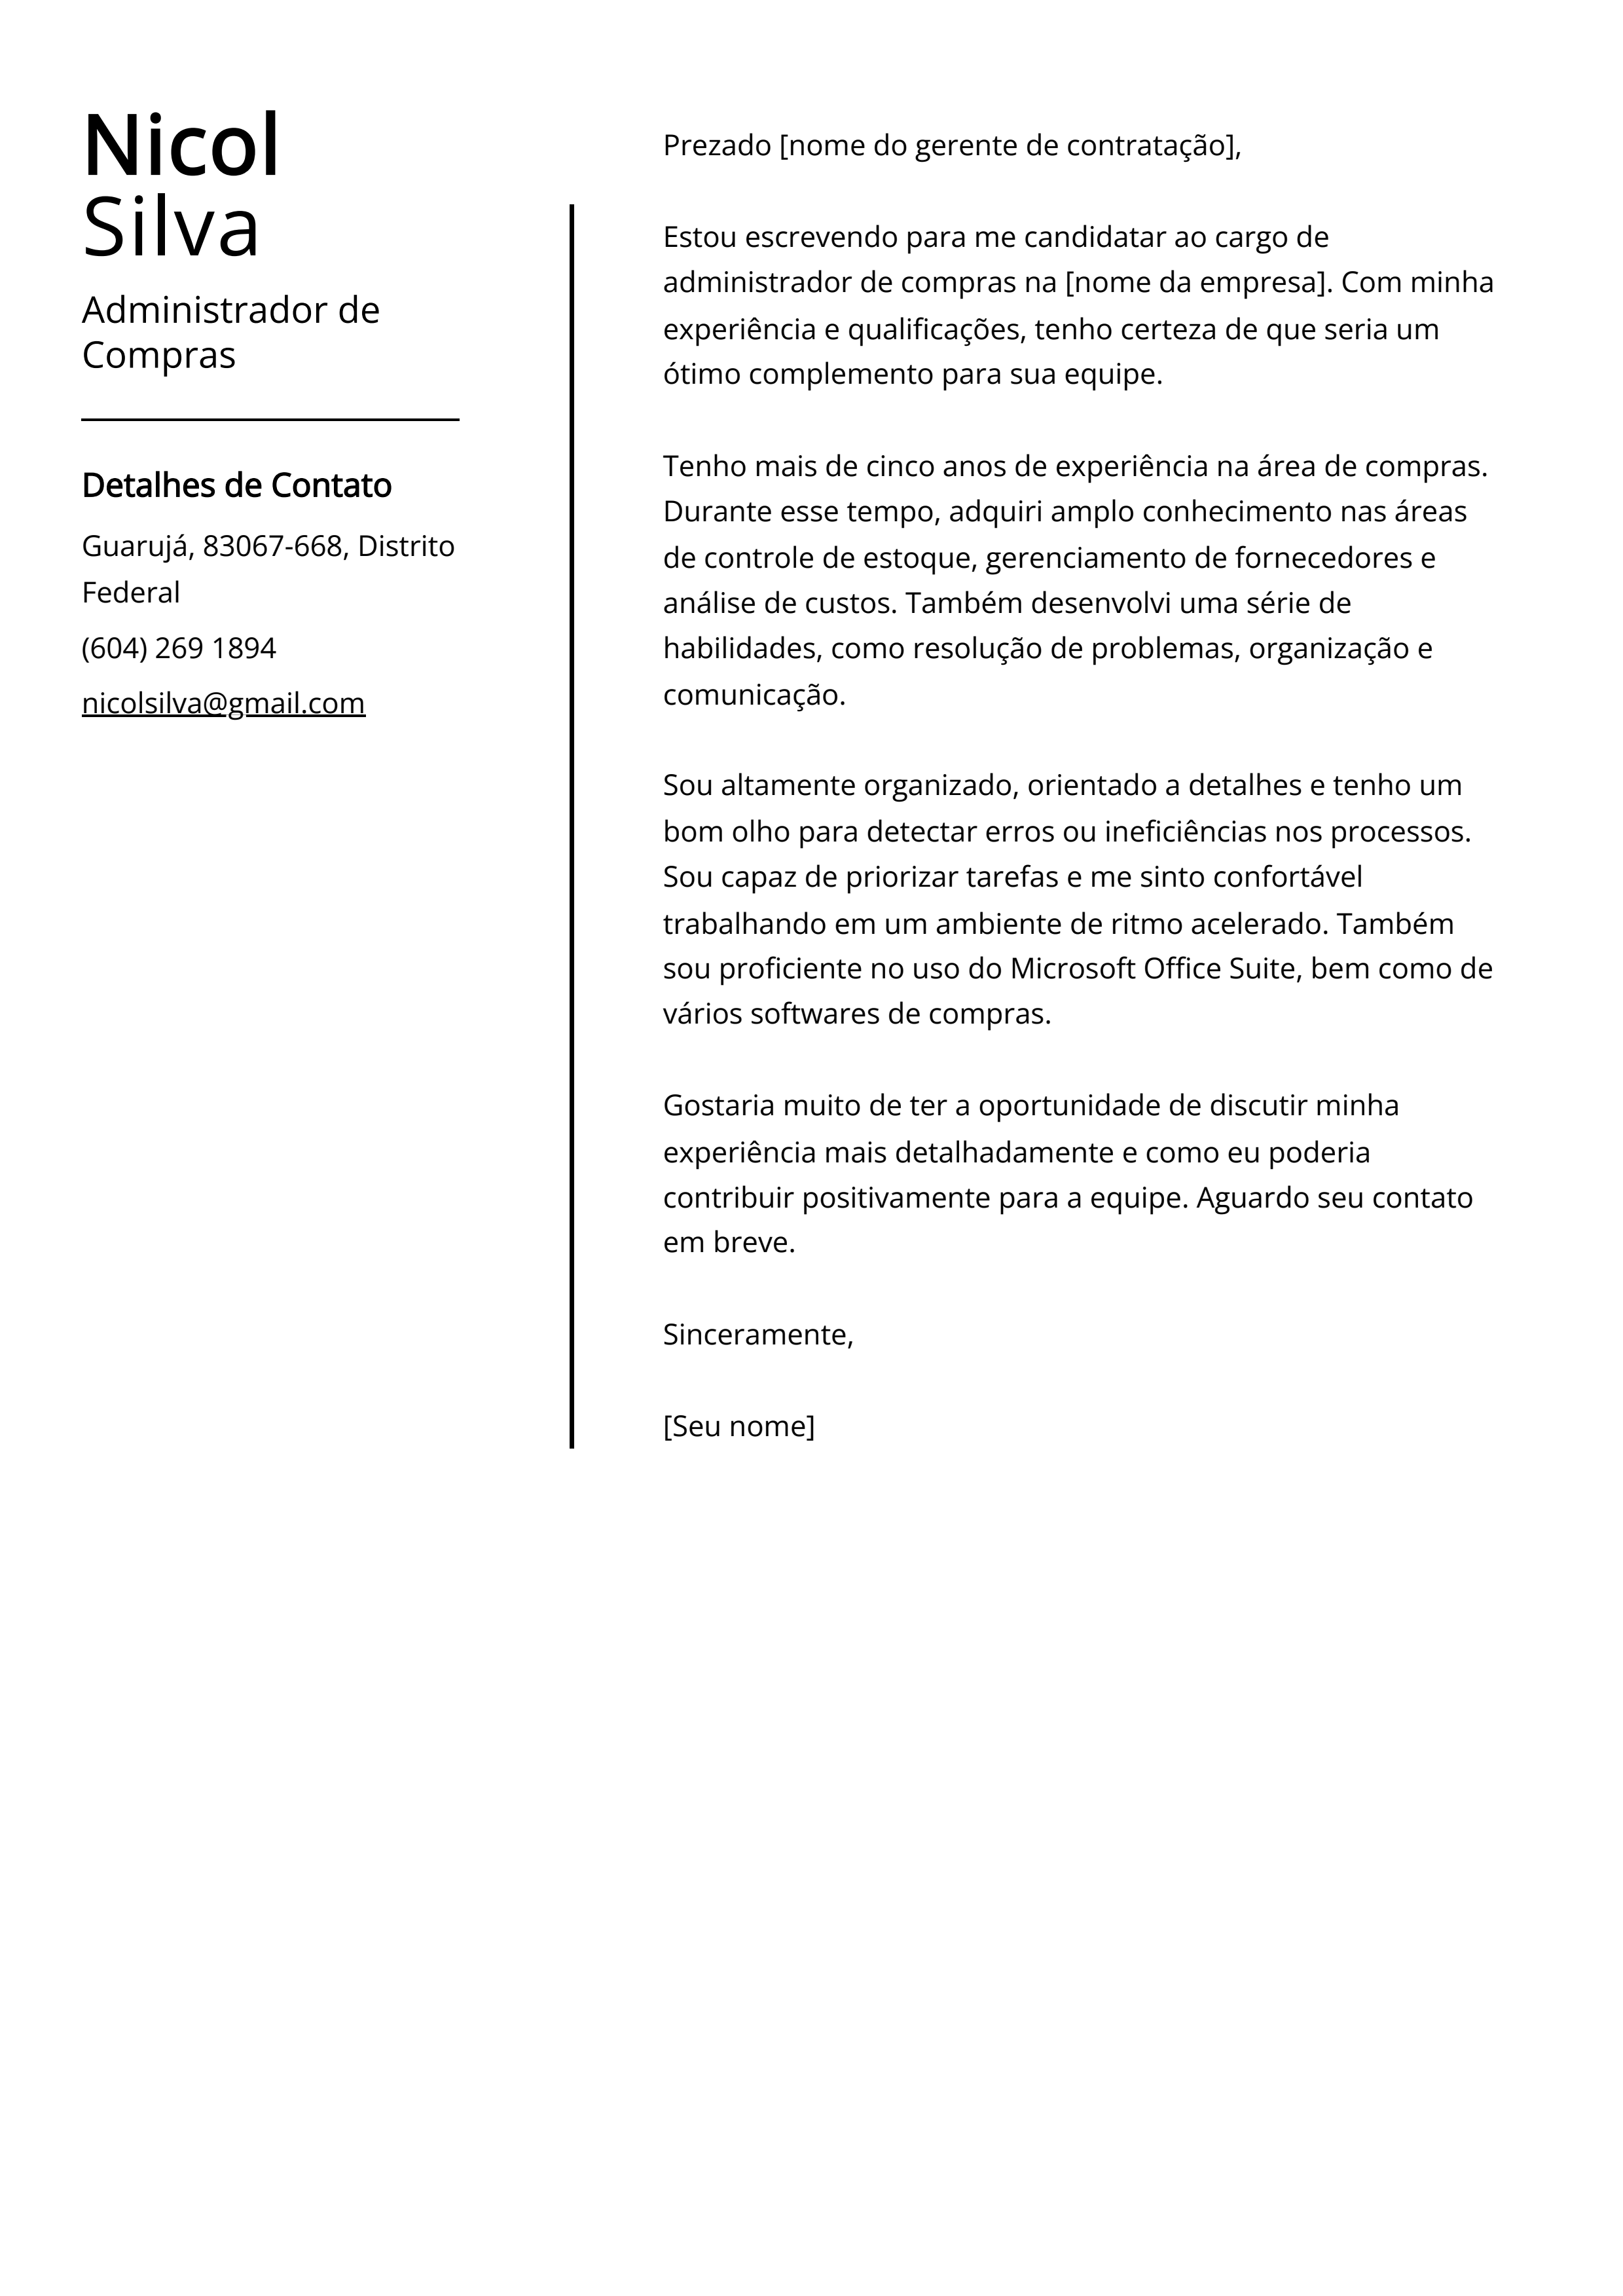 Exemplo de carta de apresentação do Administrador de Compras